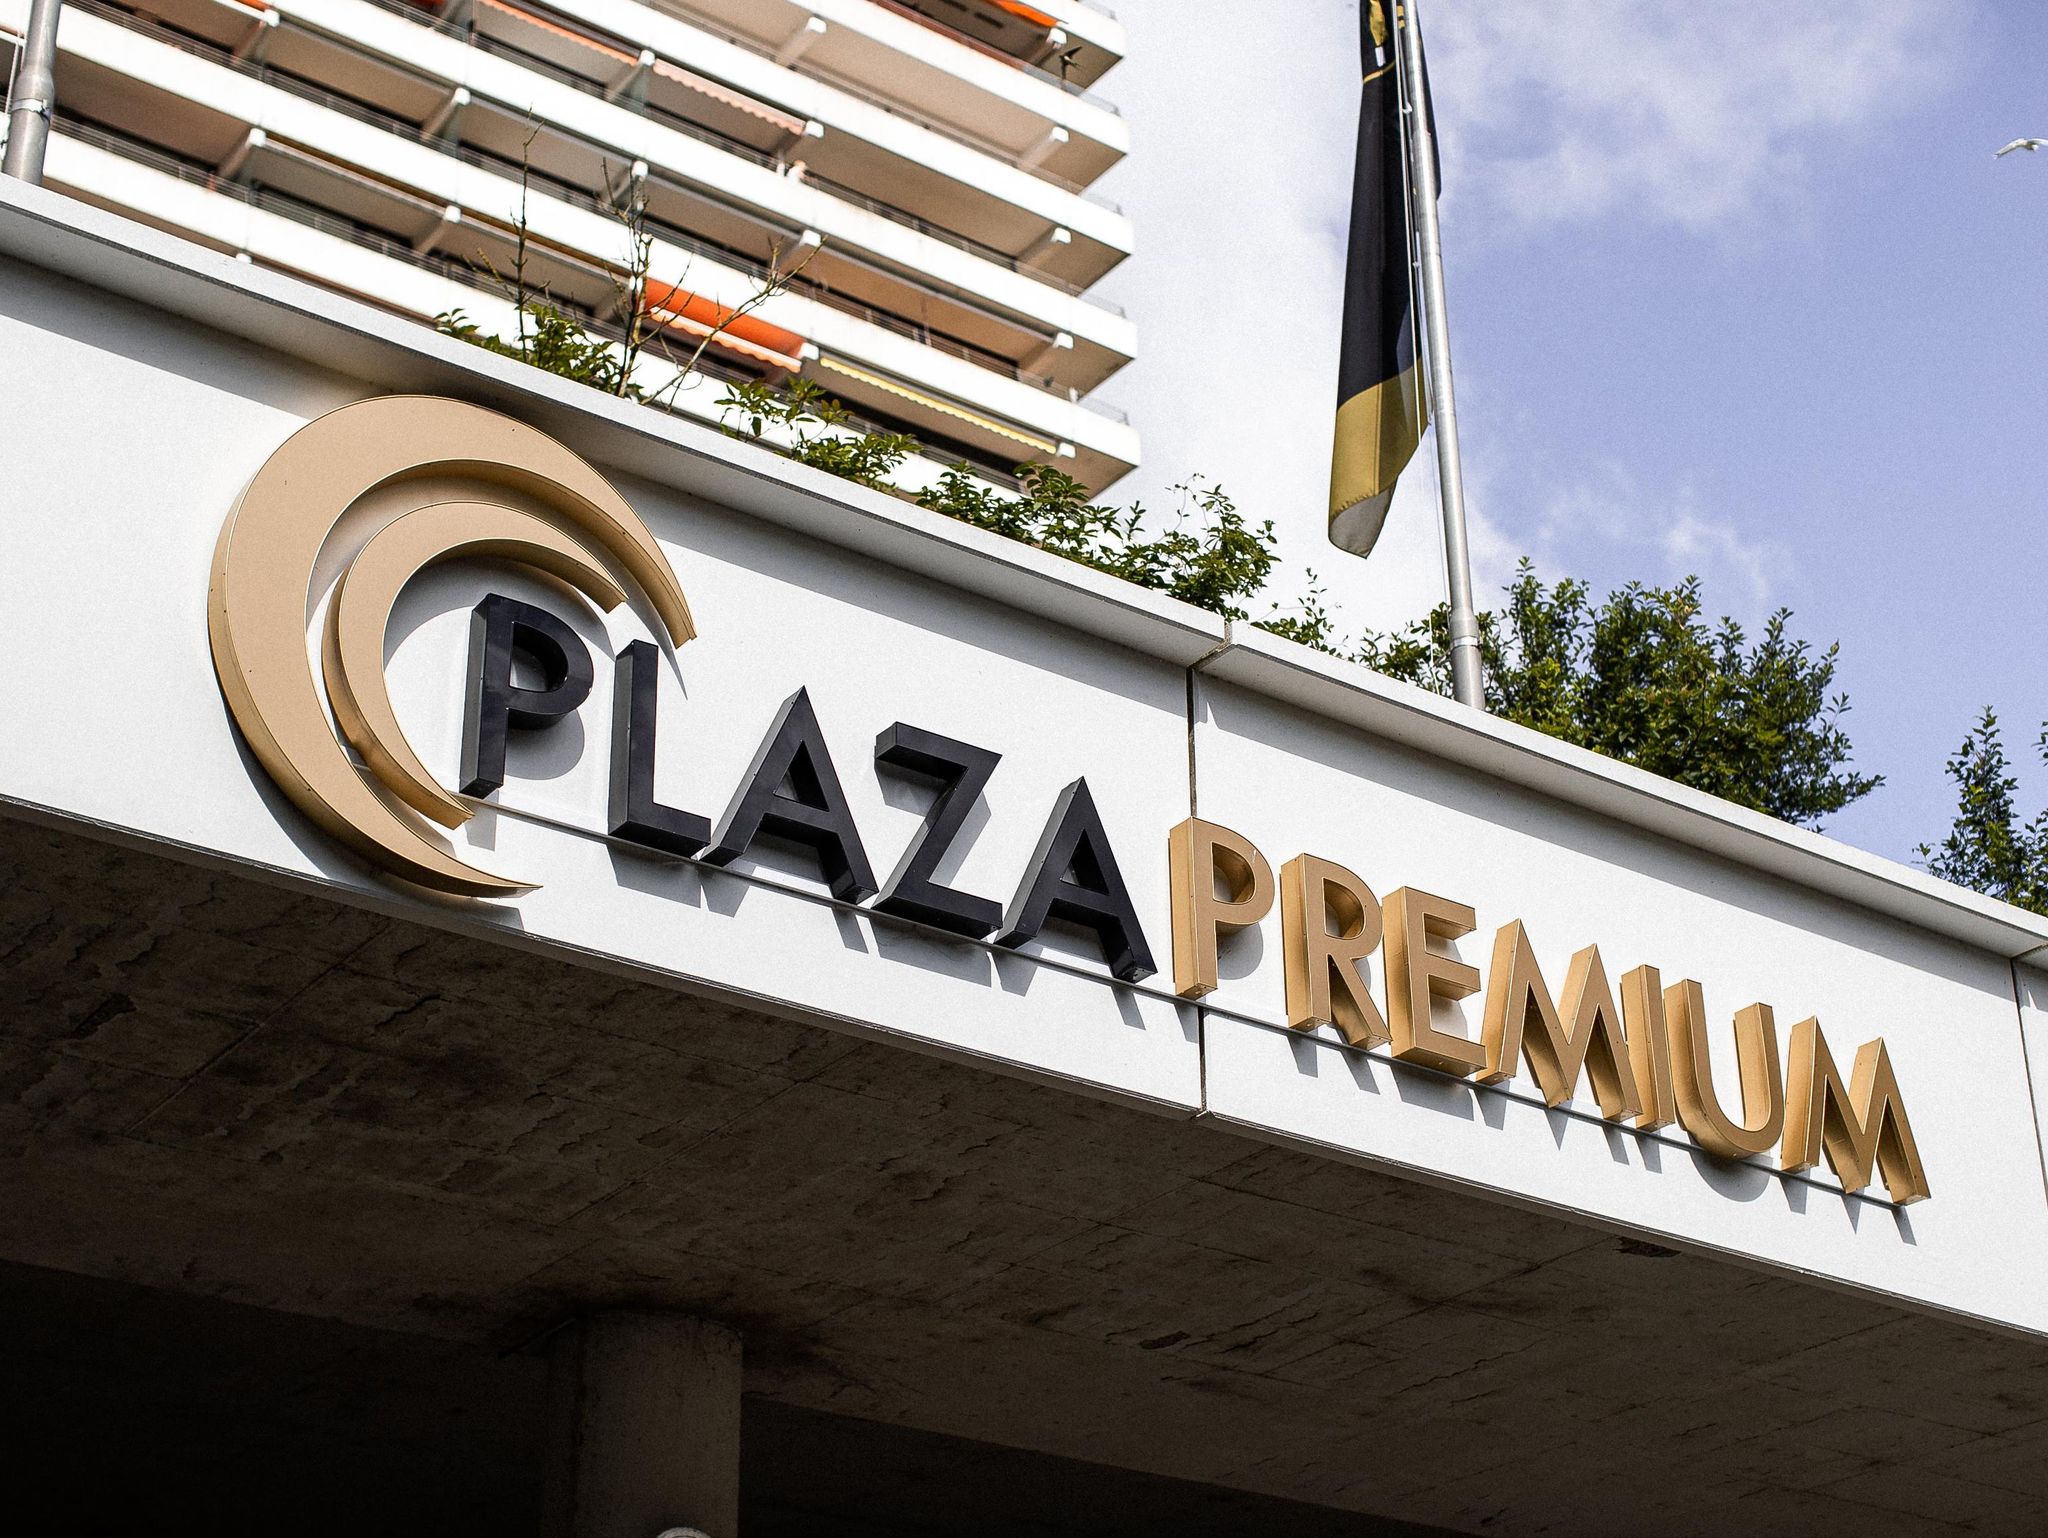 Plaza Premium Timmendorfer Strand